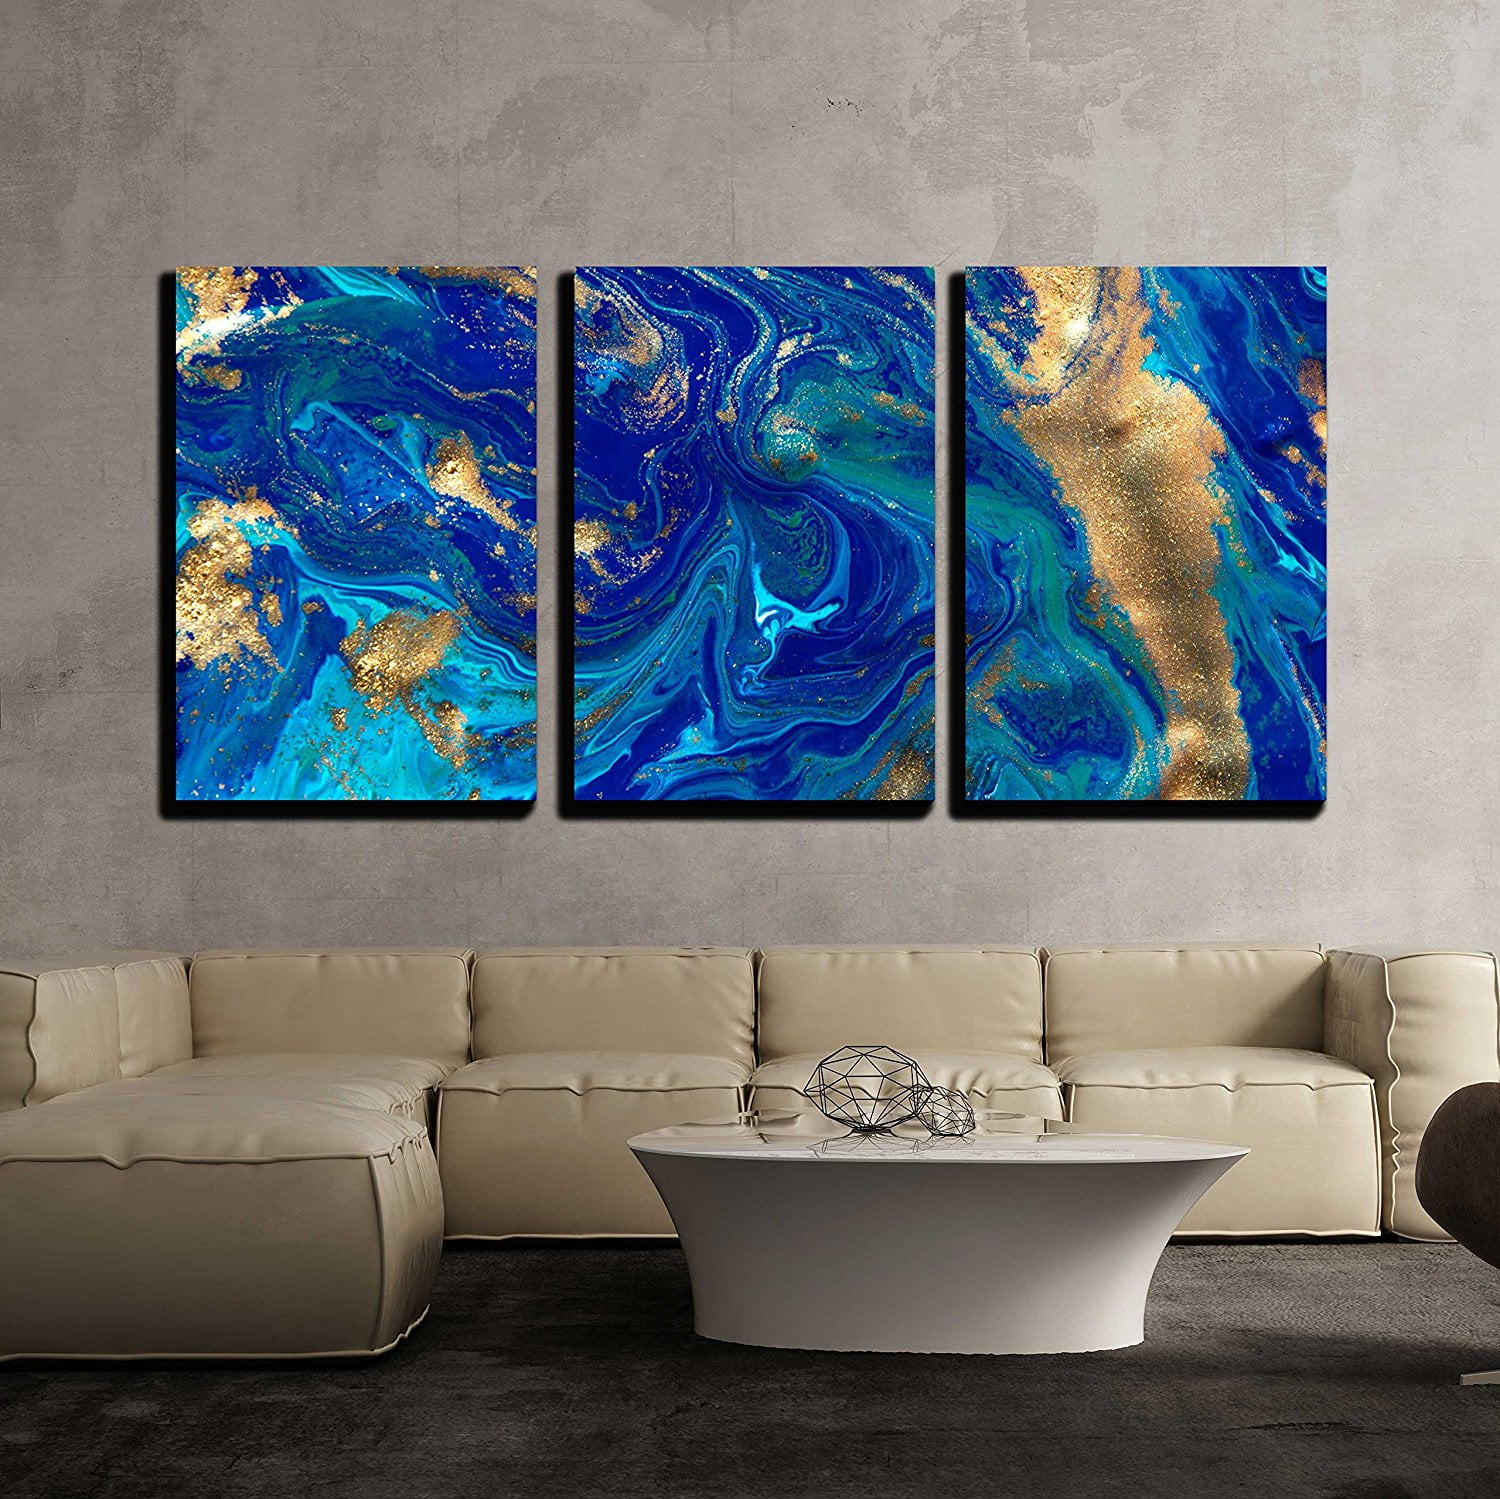 Unframed 3 Piece Canvas Wall Art Set Blue Ink Texture Abstract Artwork Prints 